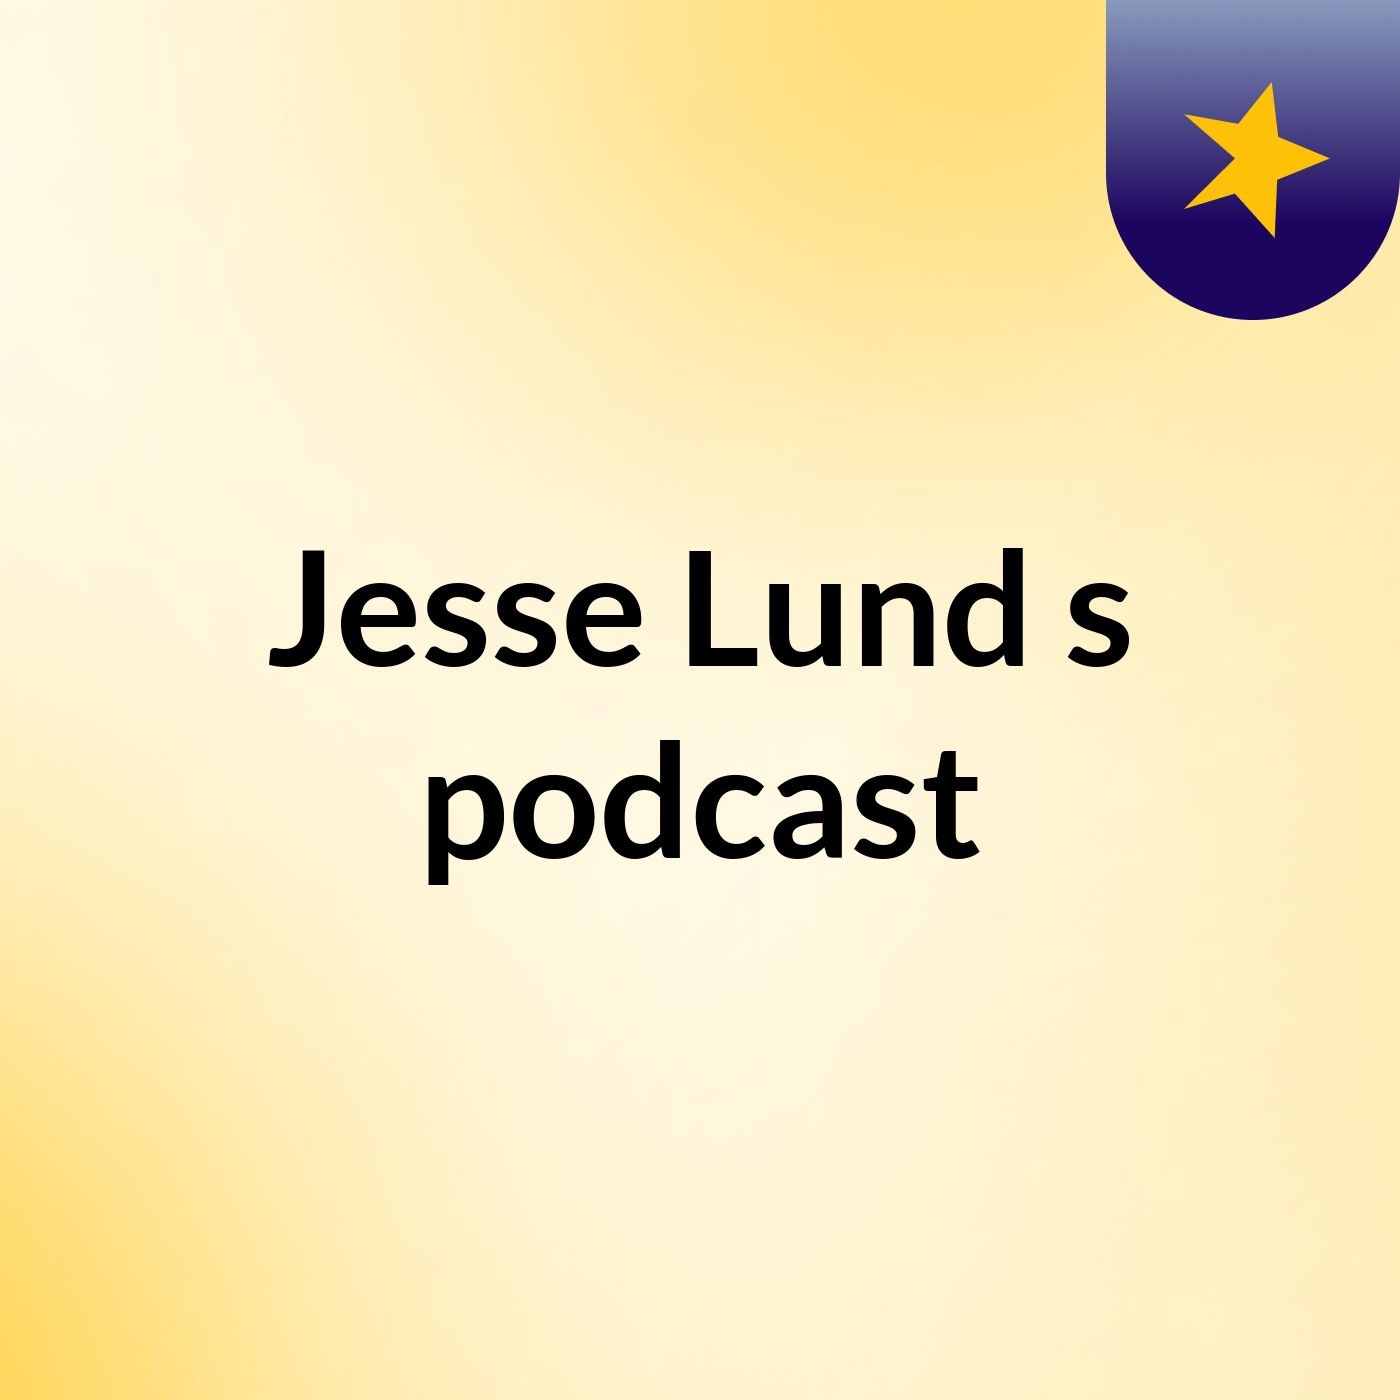 Jesse Lund's podcast